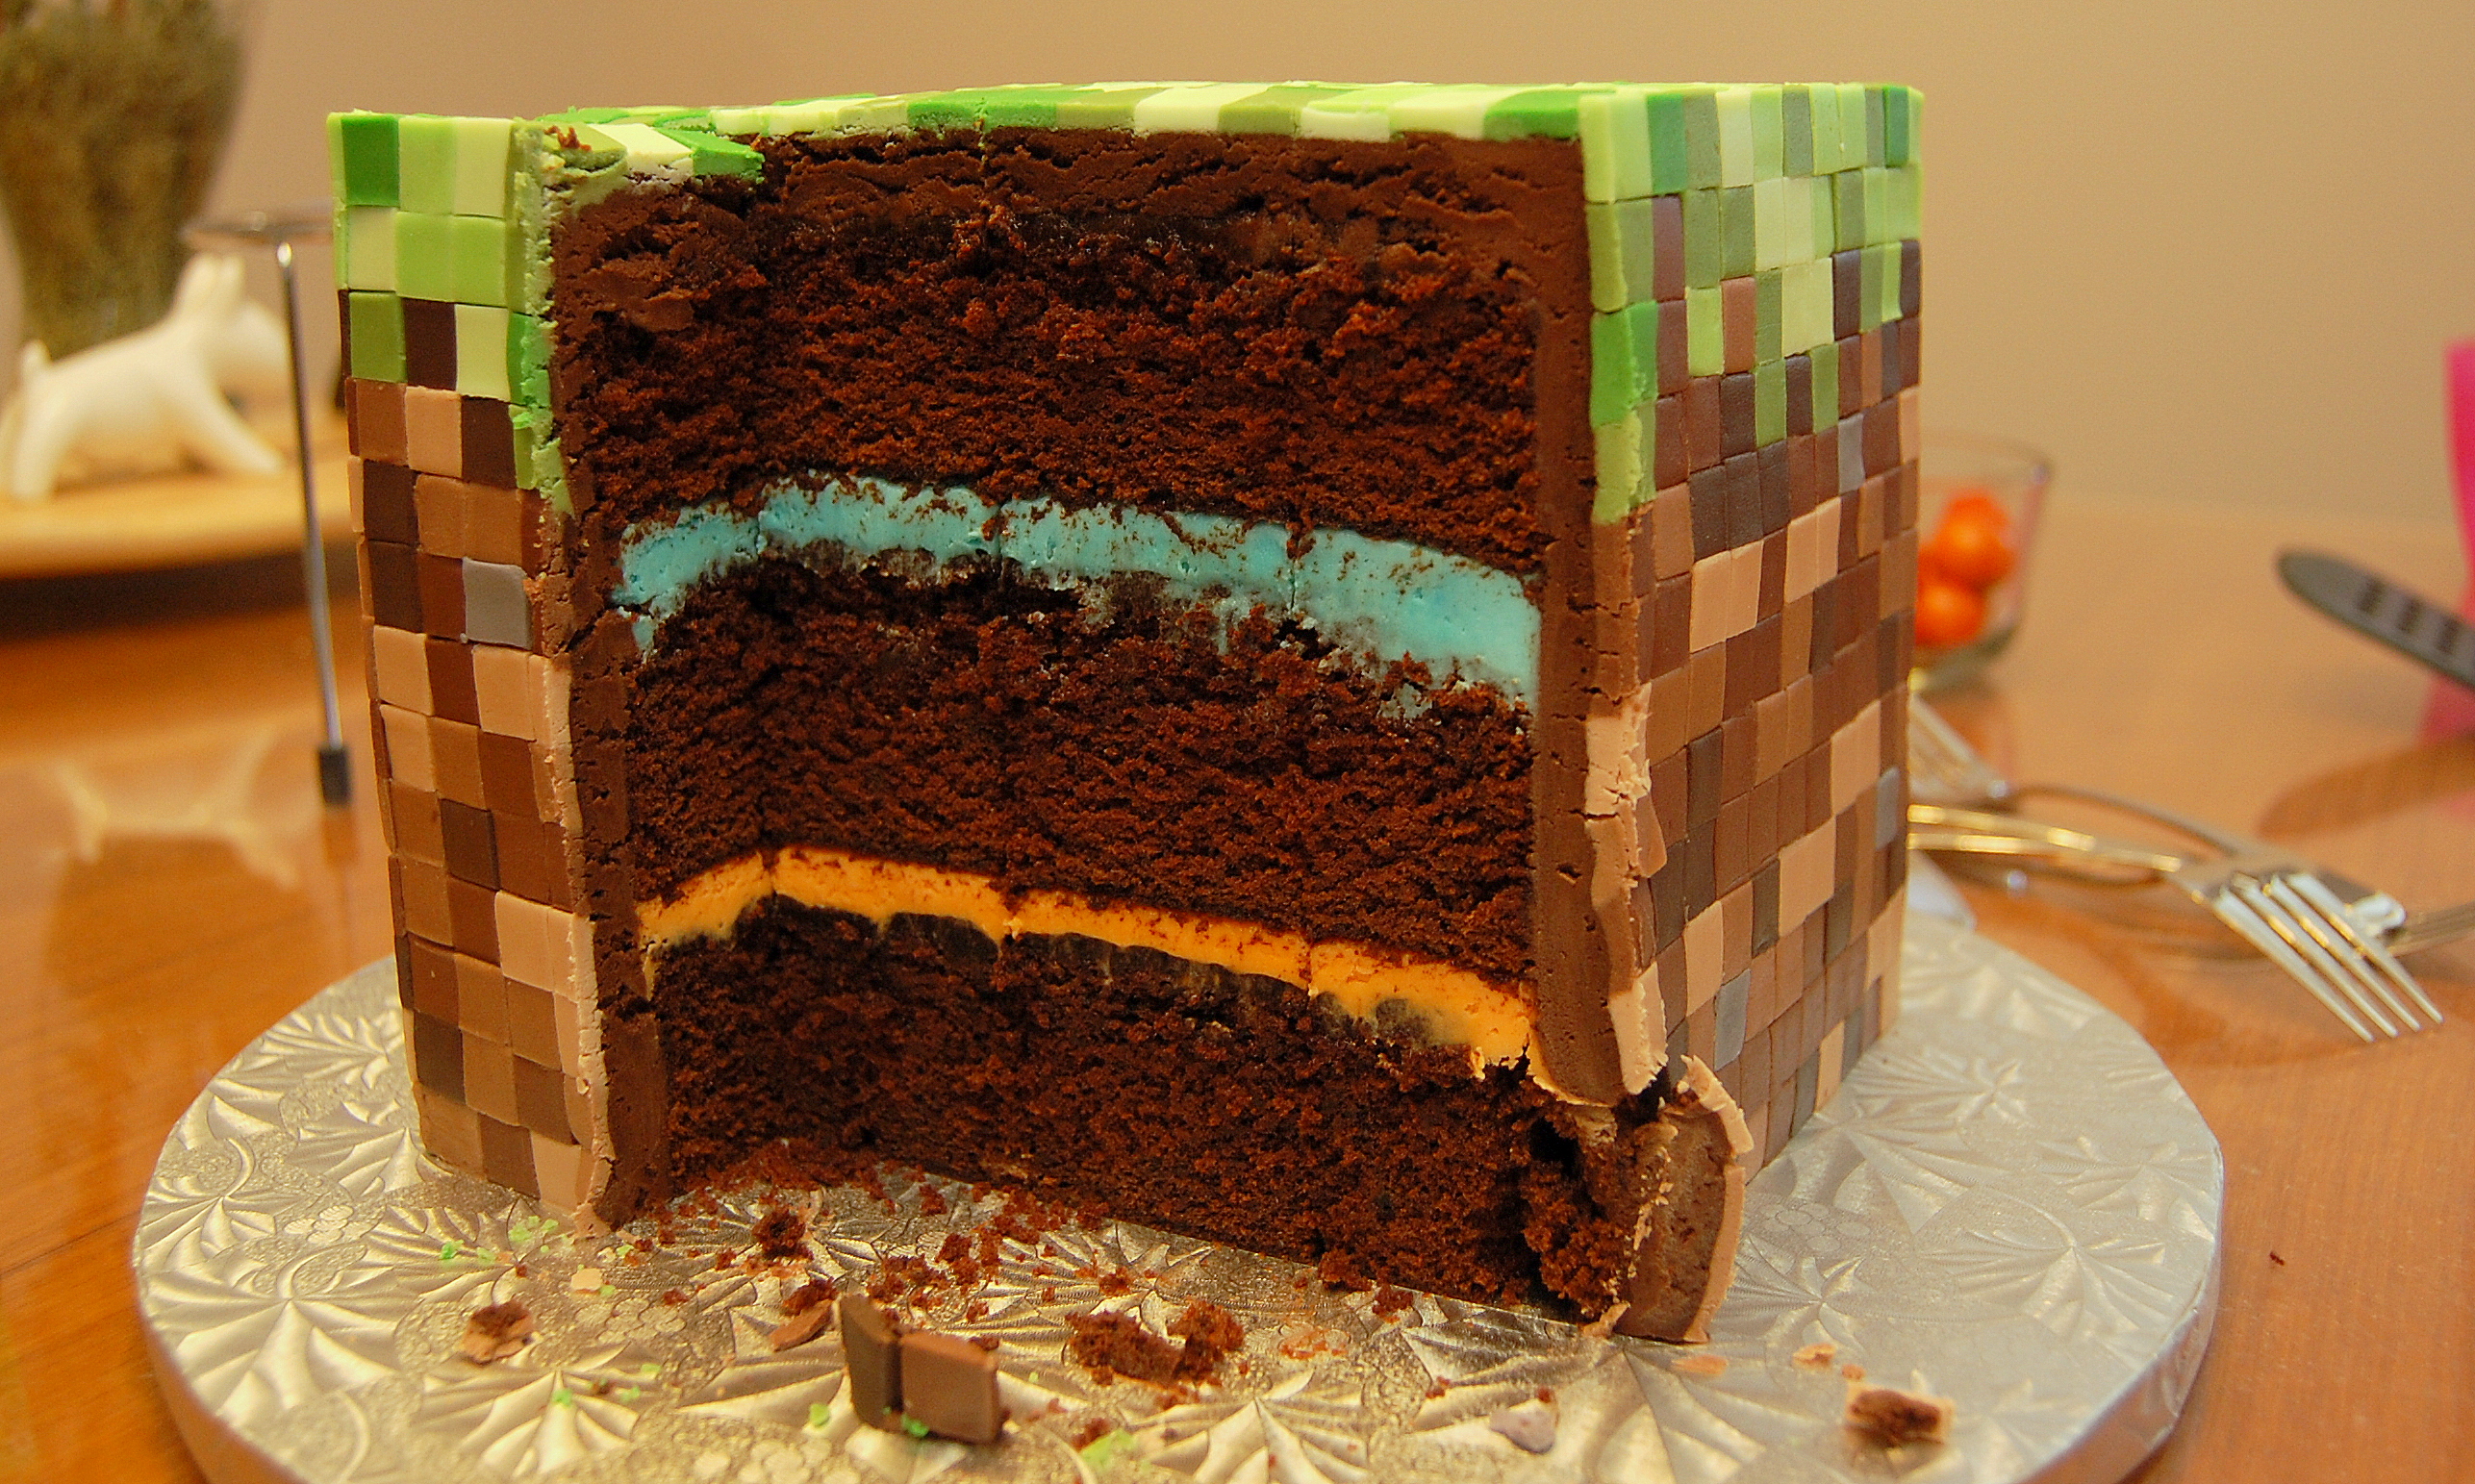 Seu aniversário está chegando? Que tal um bolo Minecraft?